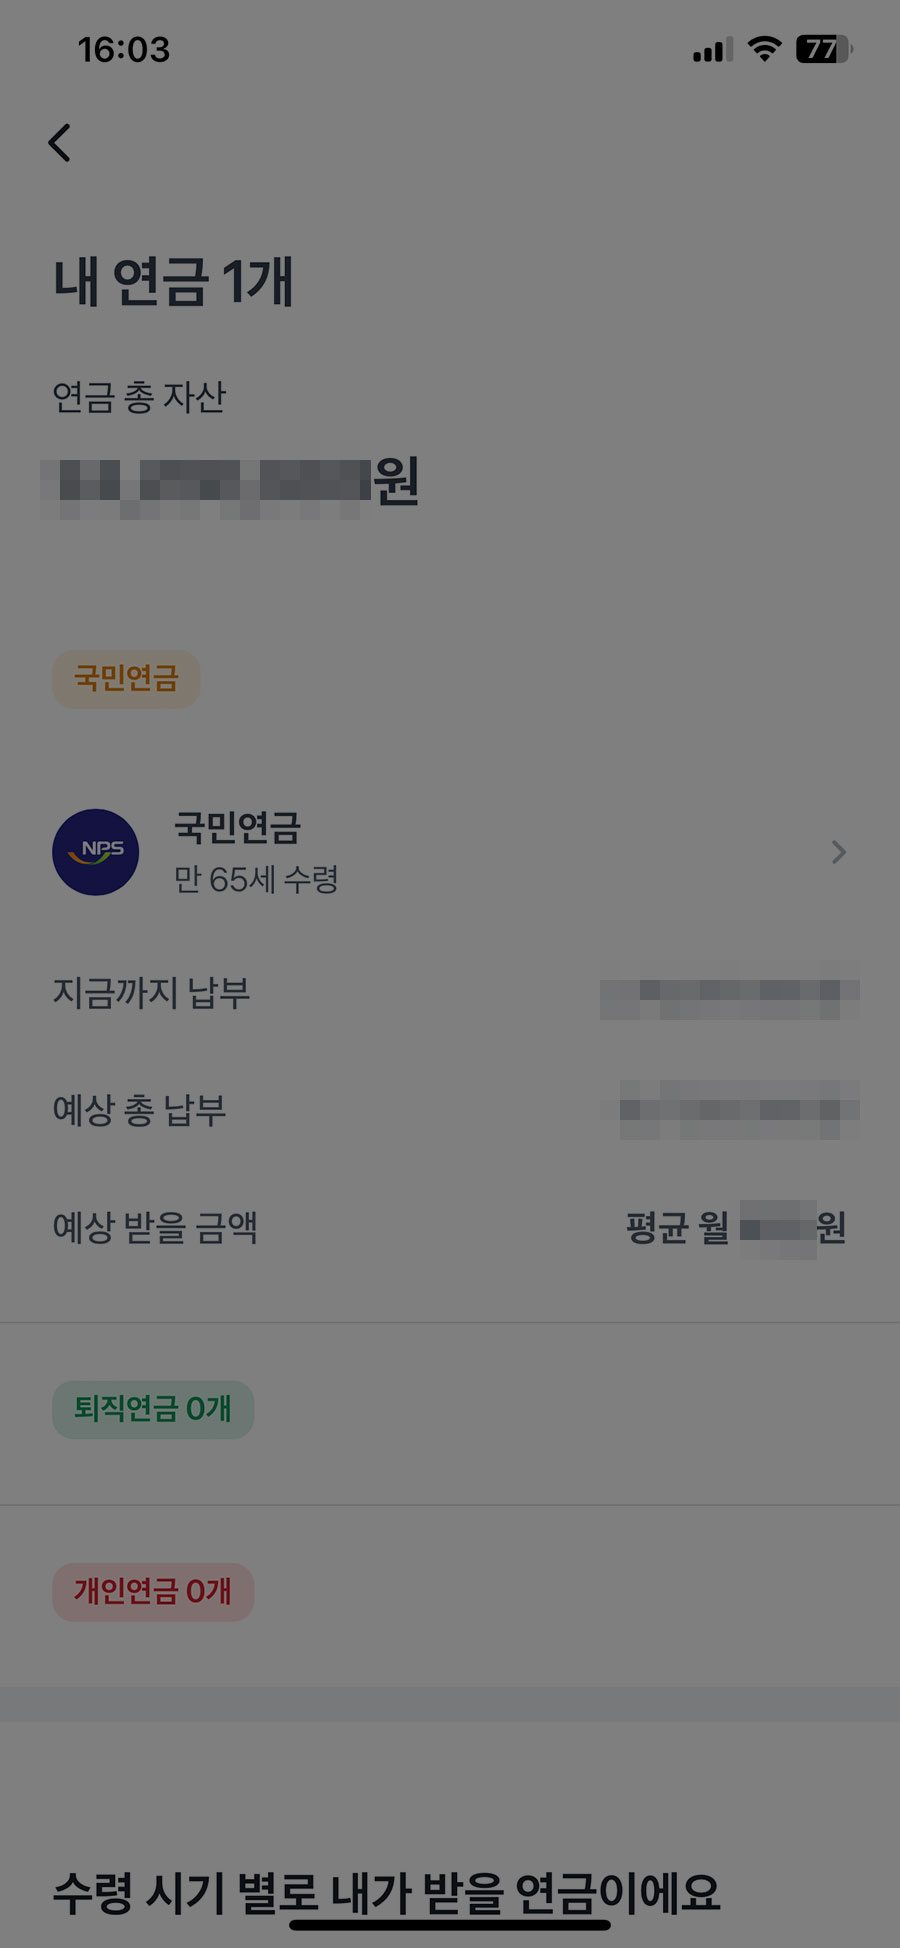 토스앱 국민연금 예상수령액 조회 결과